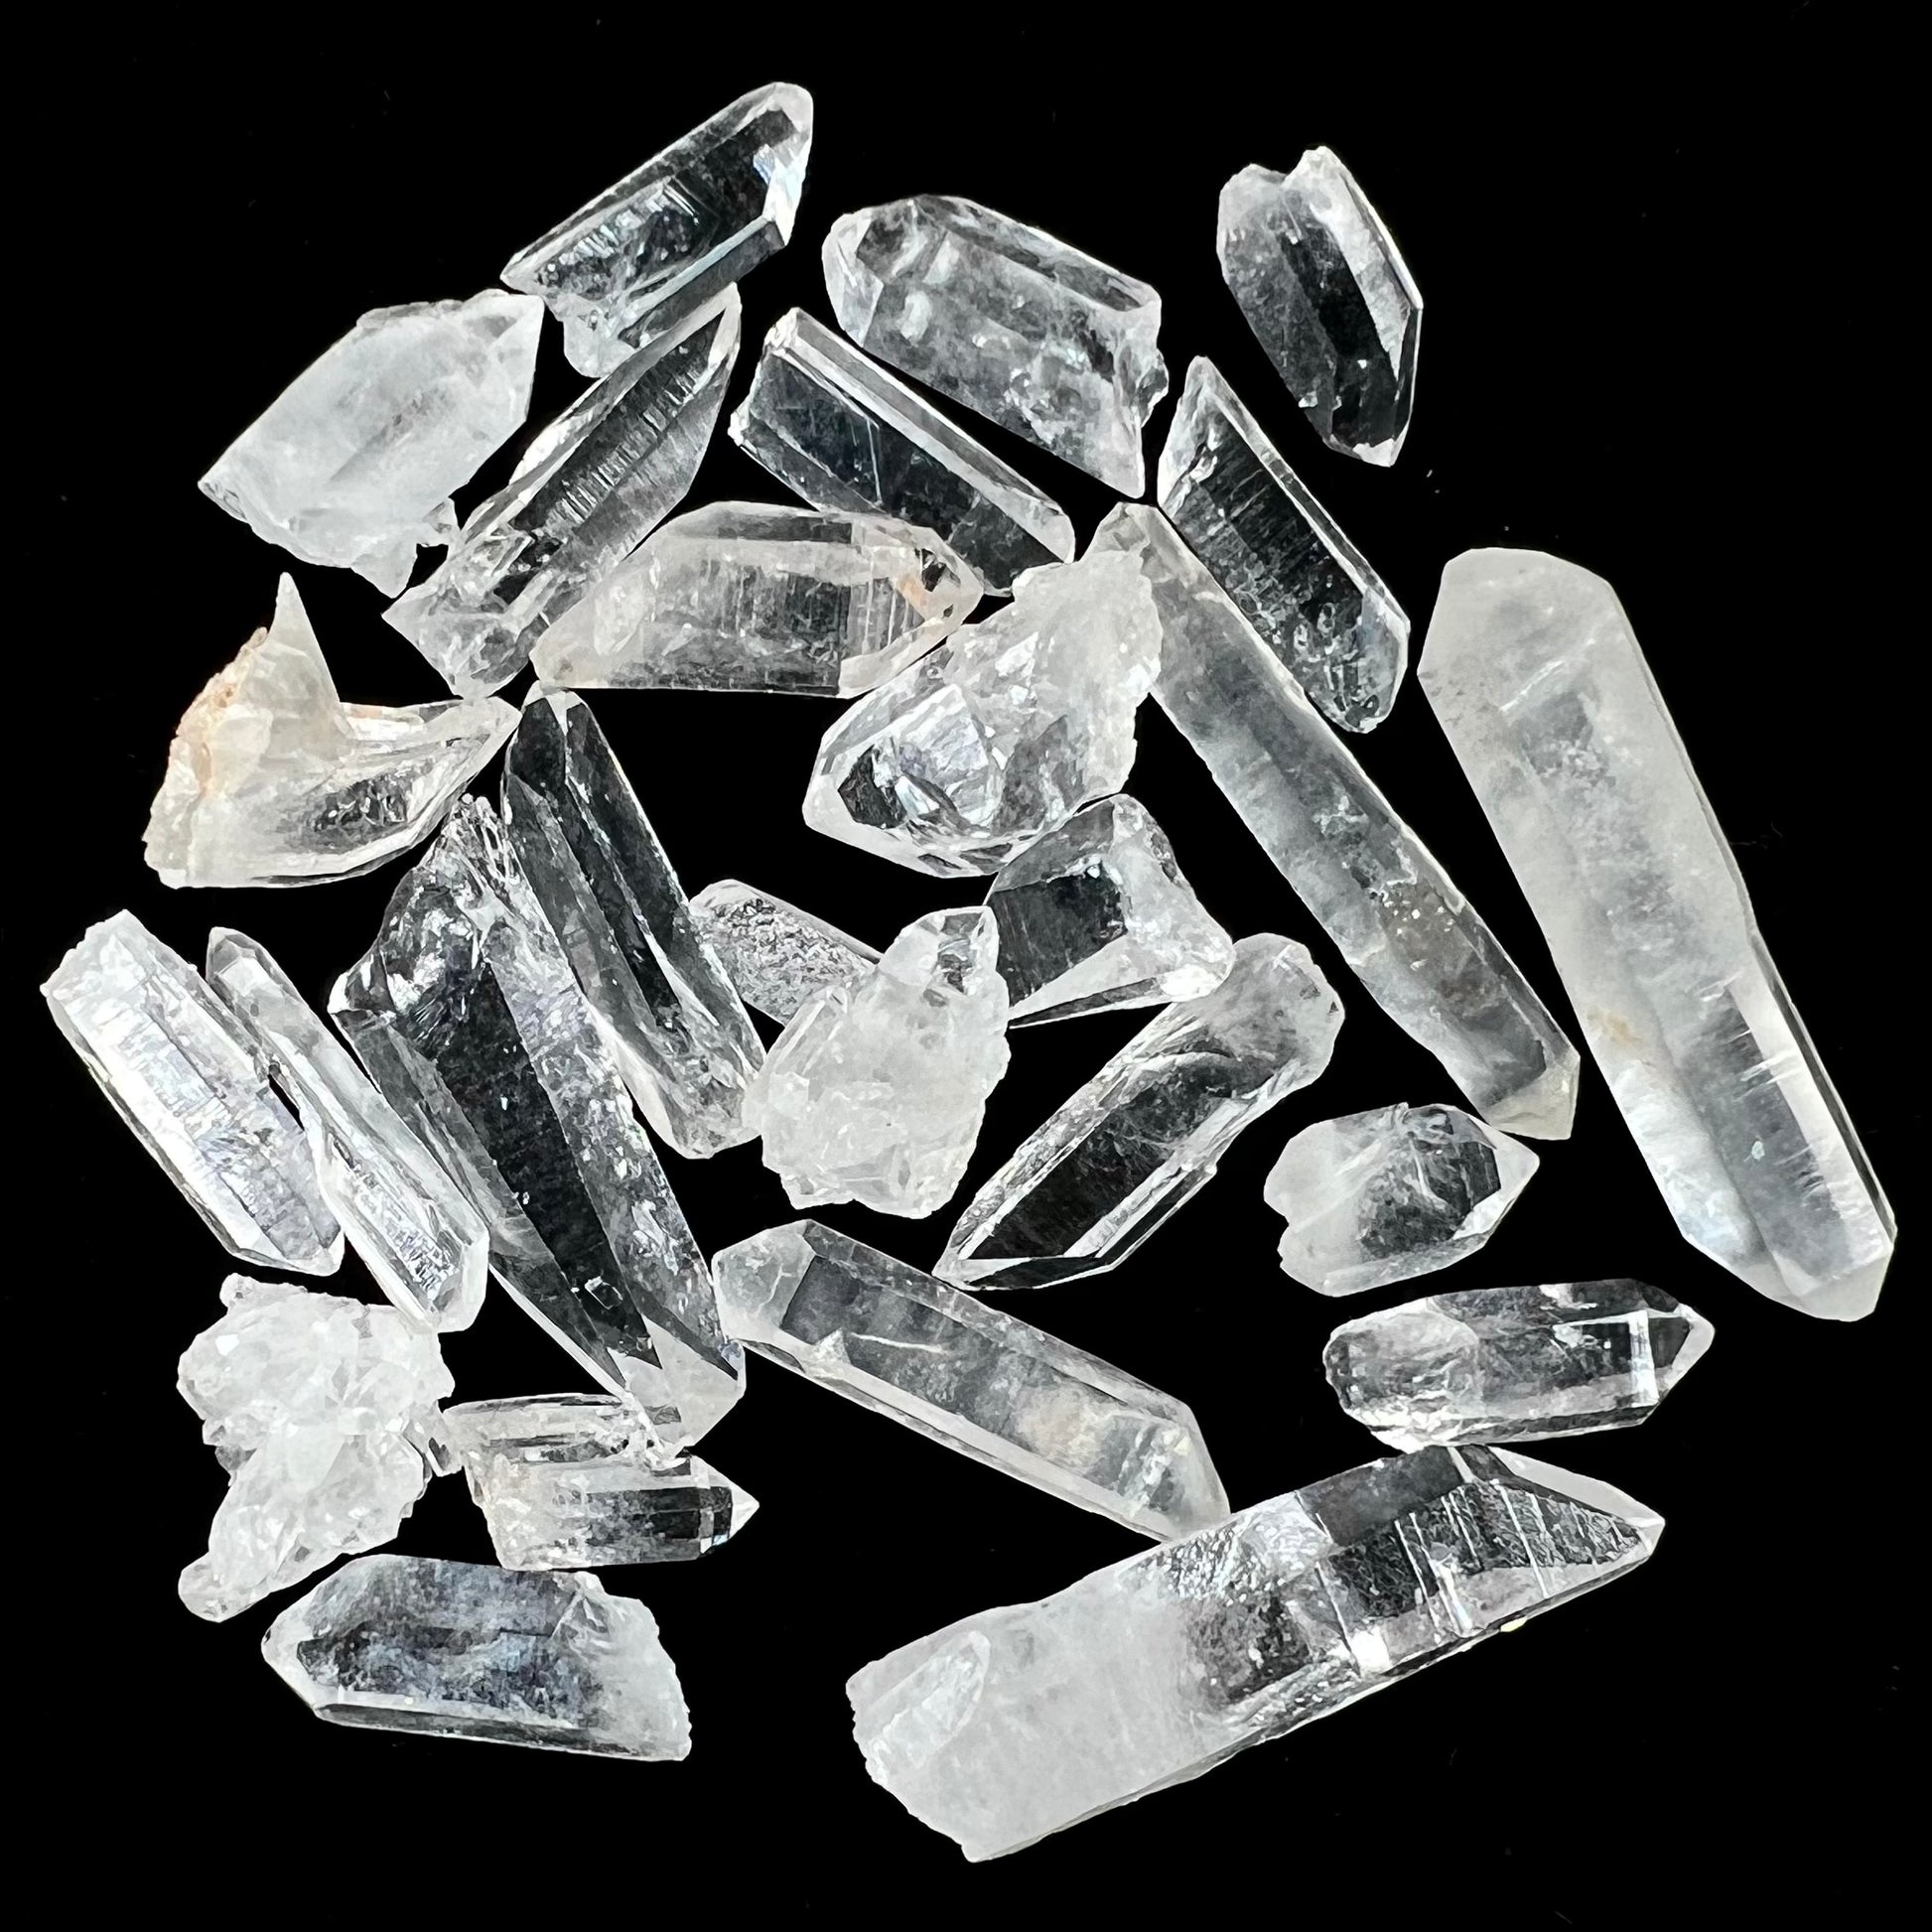 Mini Quartz Crystal Lot of 26 Pieces